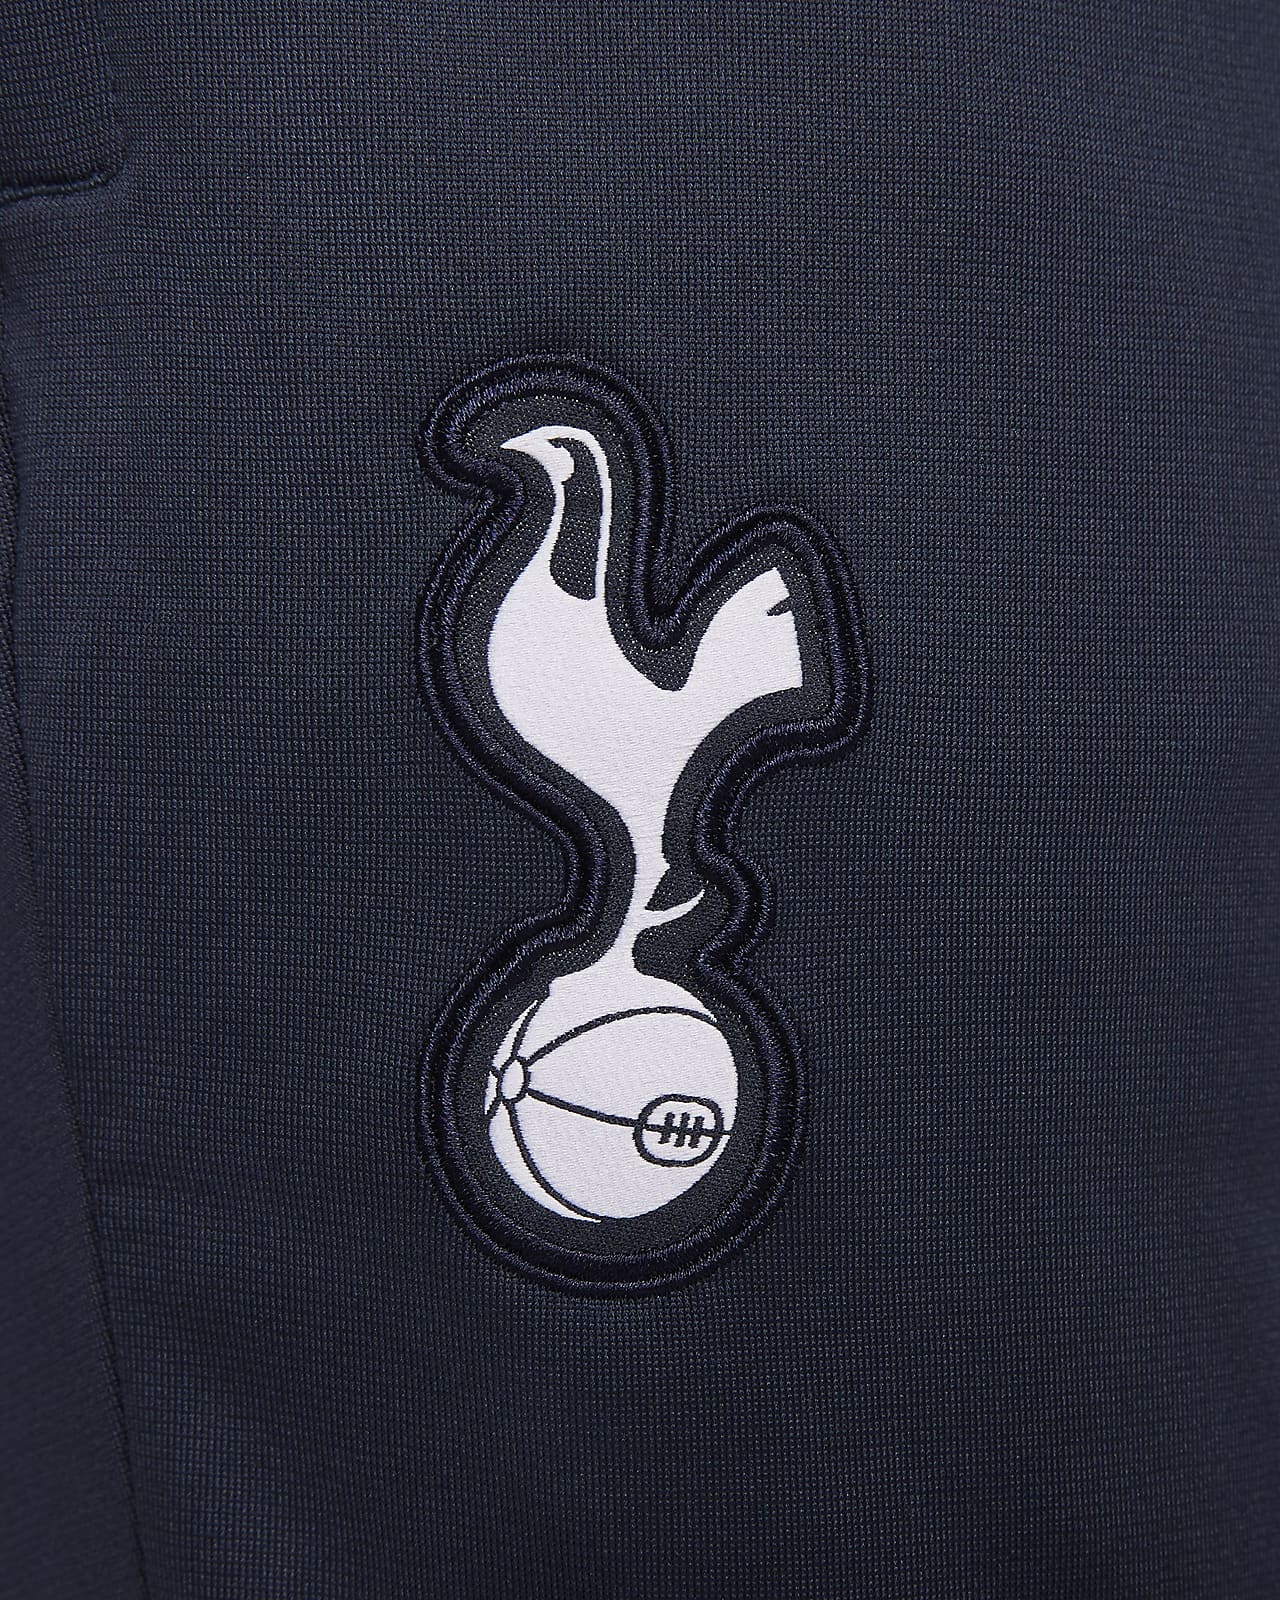 Tottenham Hotspur Strike Men's Nike Dri-FIT Soccer Track Pants